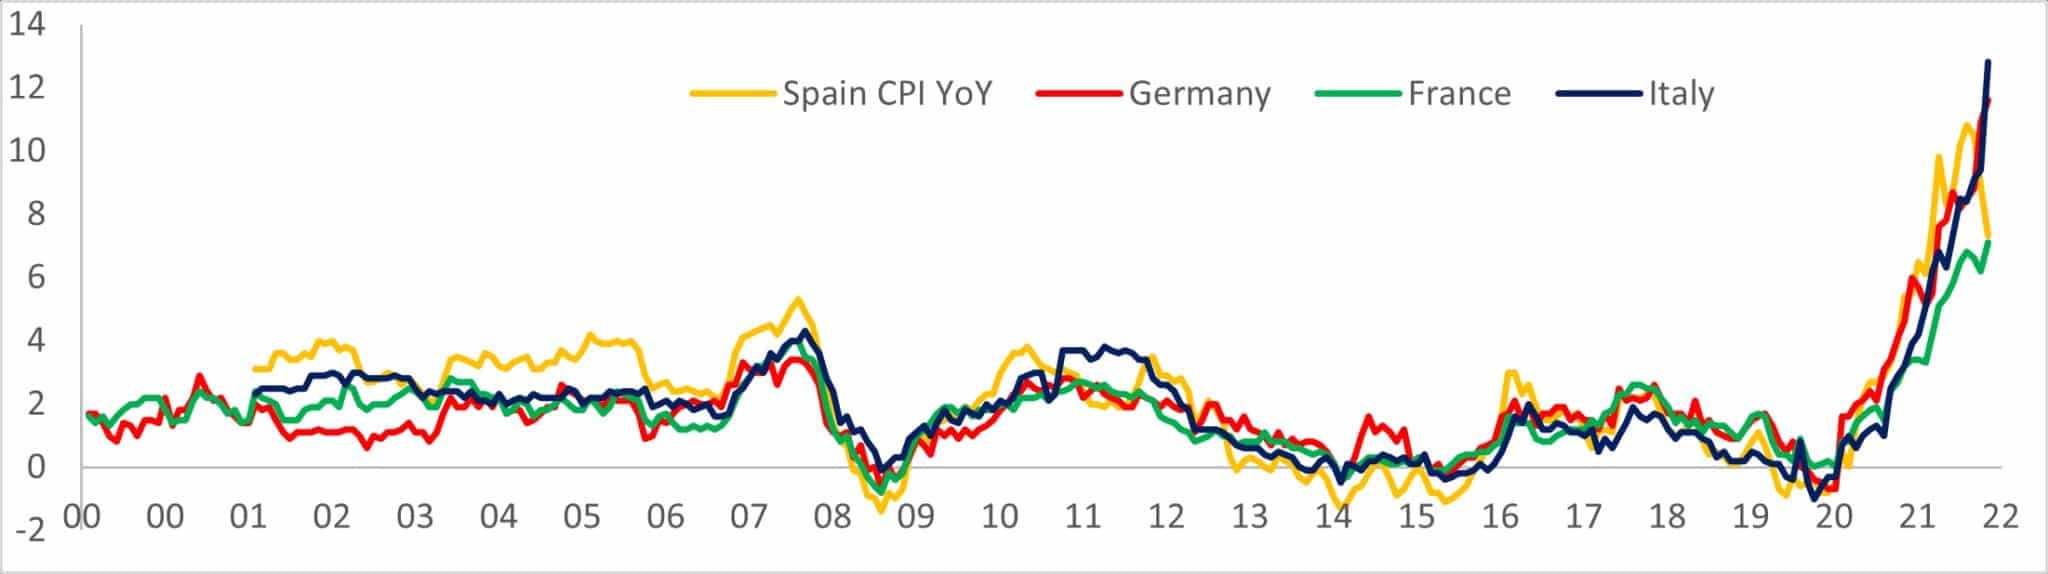 Gráfico mostrando o aumento de YoY no IPC em Espanha, Alemanha, França e Itália de 2000 a 2022